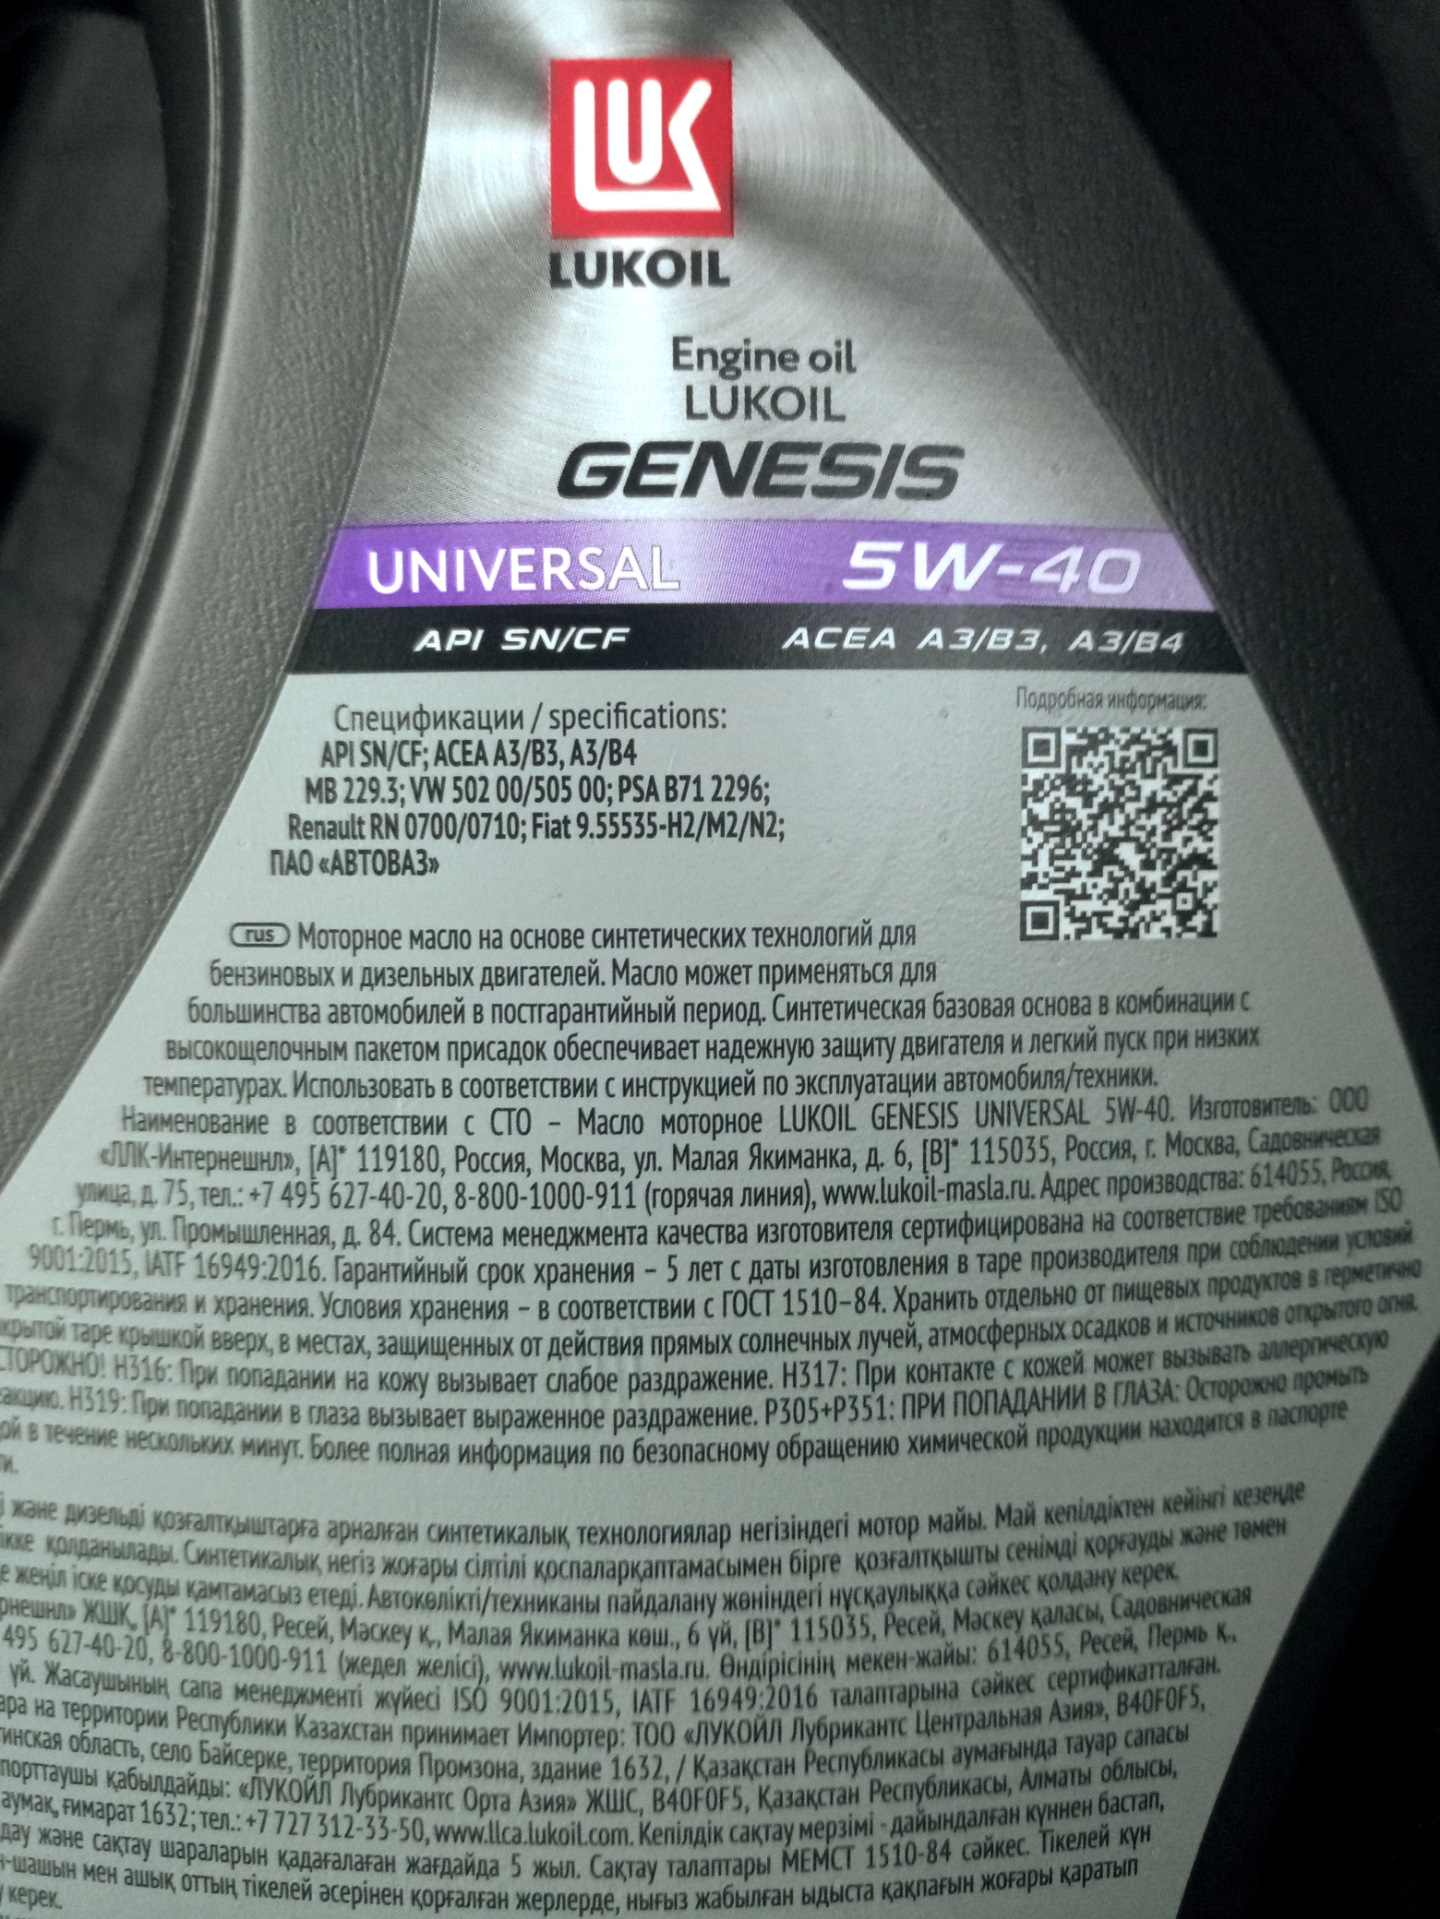 Масло лукойл универсал 5w40. Лукойл Genesis Universal 5w40. Genesis Universal 5w-40. Lukoil Genesis Universal 5w-40. Лукойл масла Genesis Universal.